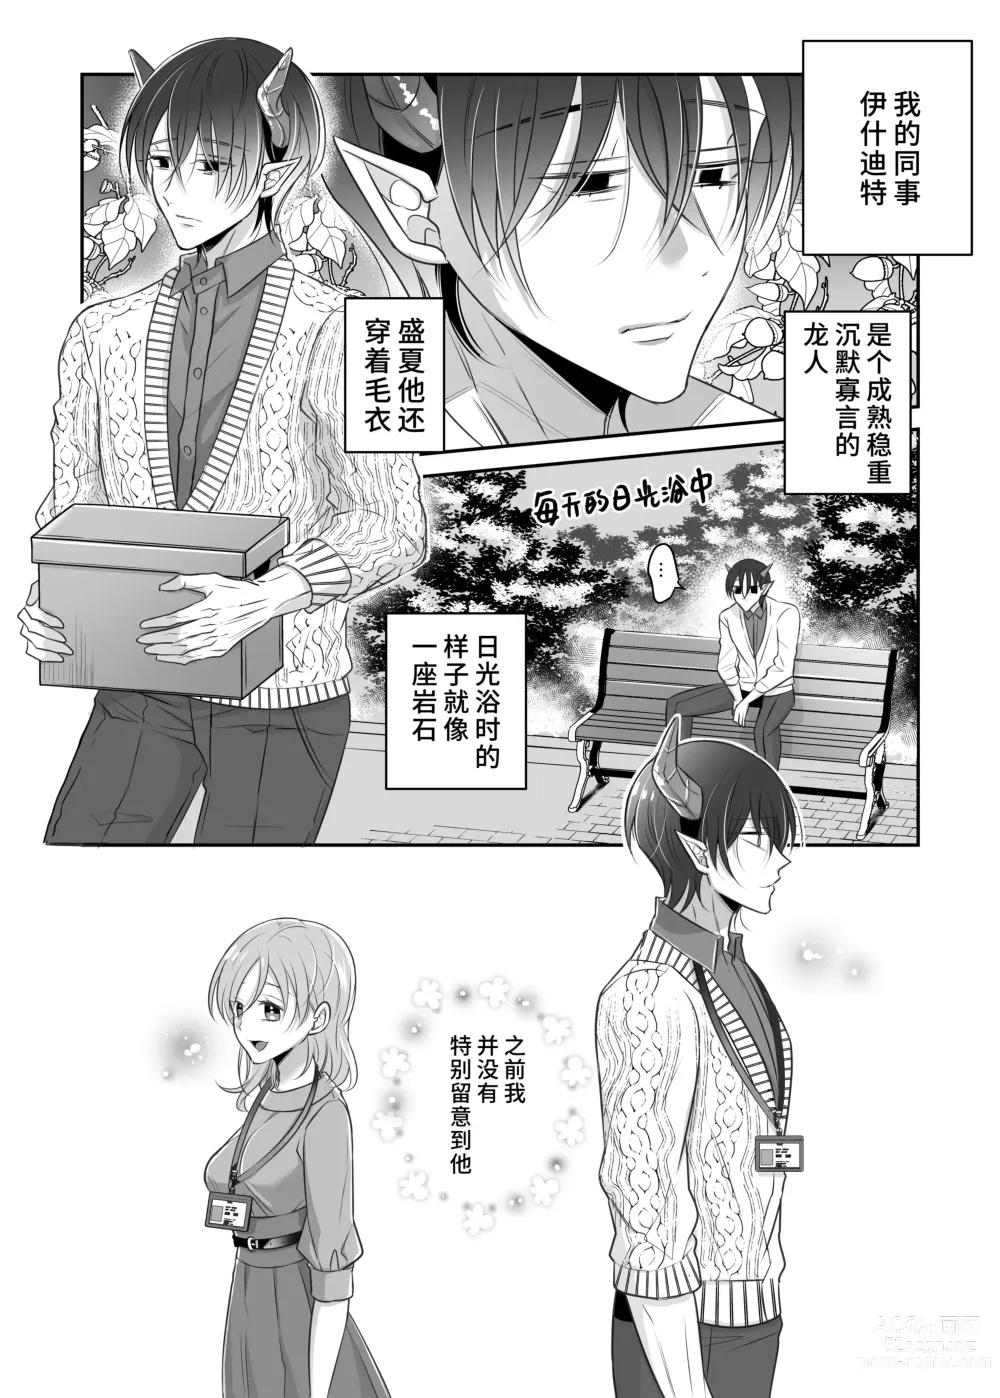 Page 3 of doujinshi 关于我的龙人同事发情期太过骇人这件事